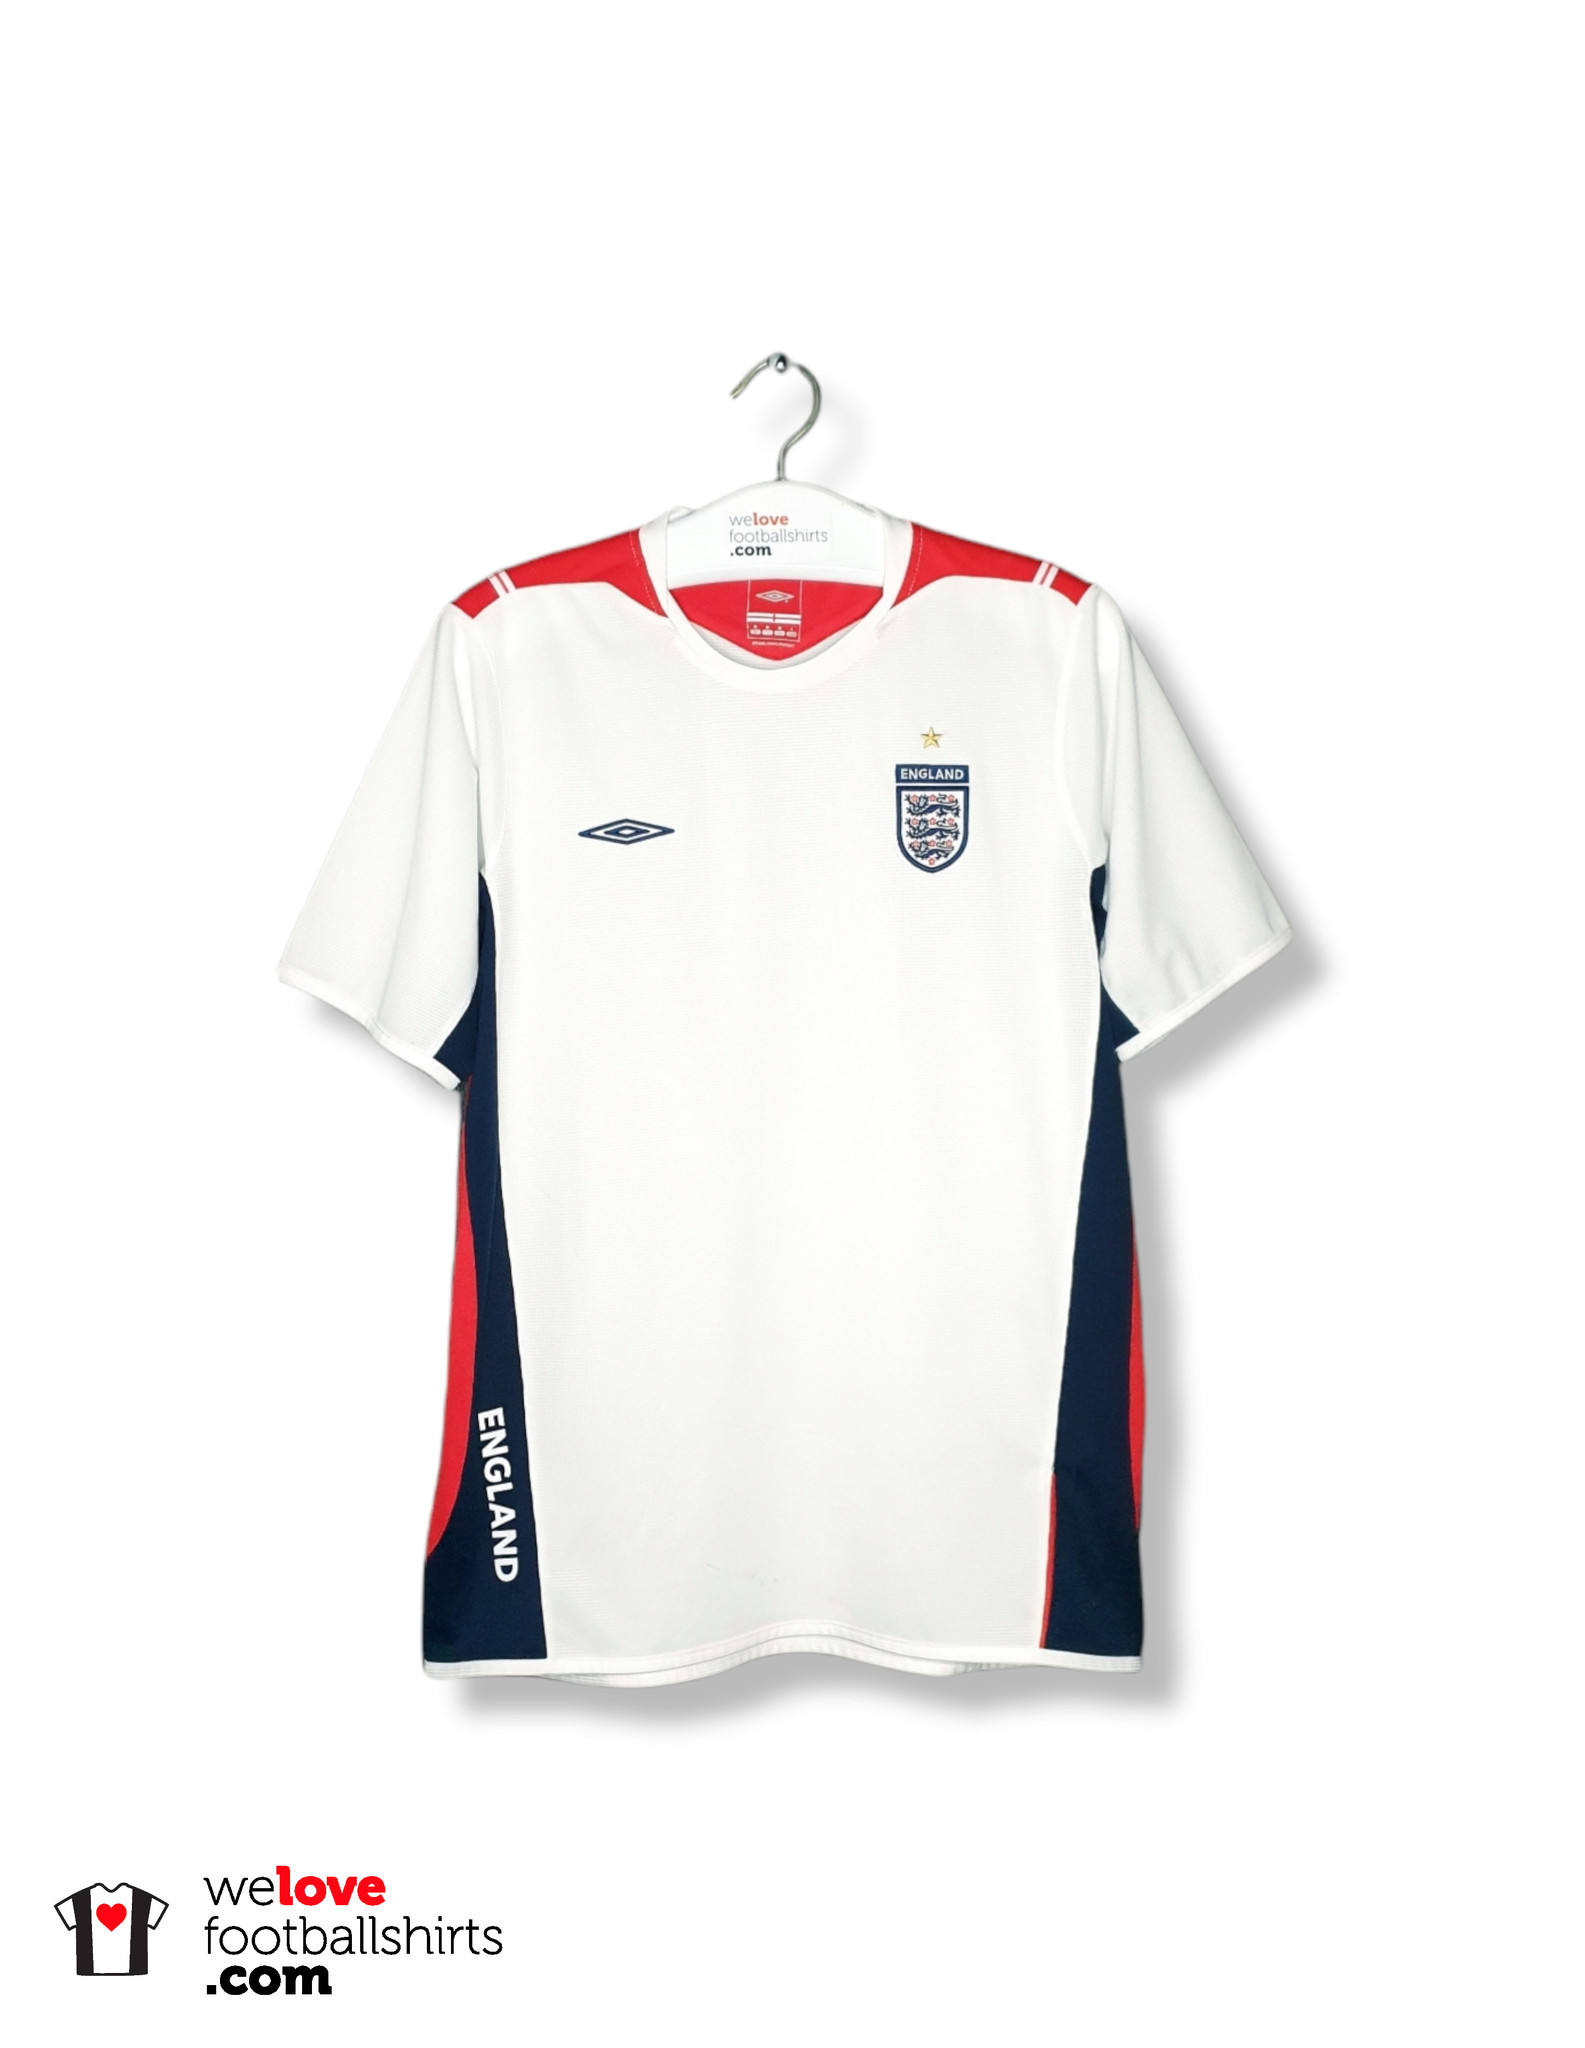 jukbeen schipper Duidelijk maken Umbro training shirt England 2004/05 - Welovefootballshirts.com